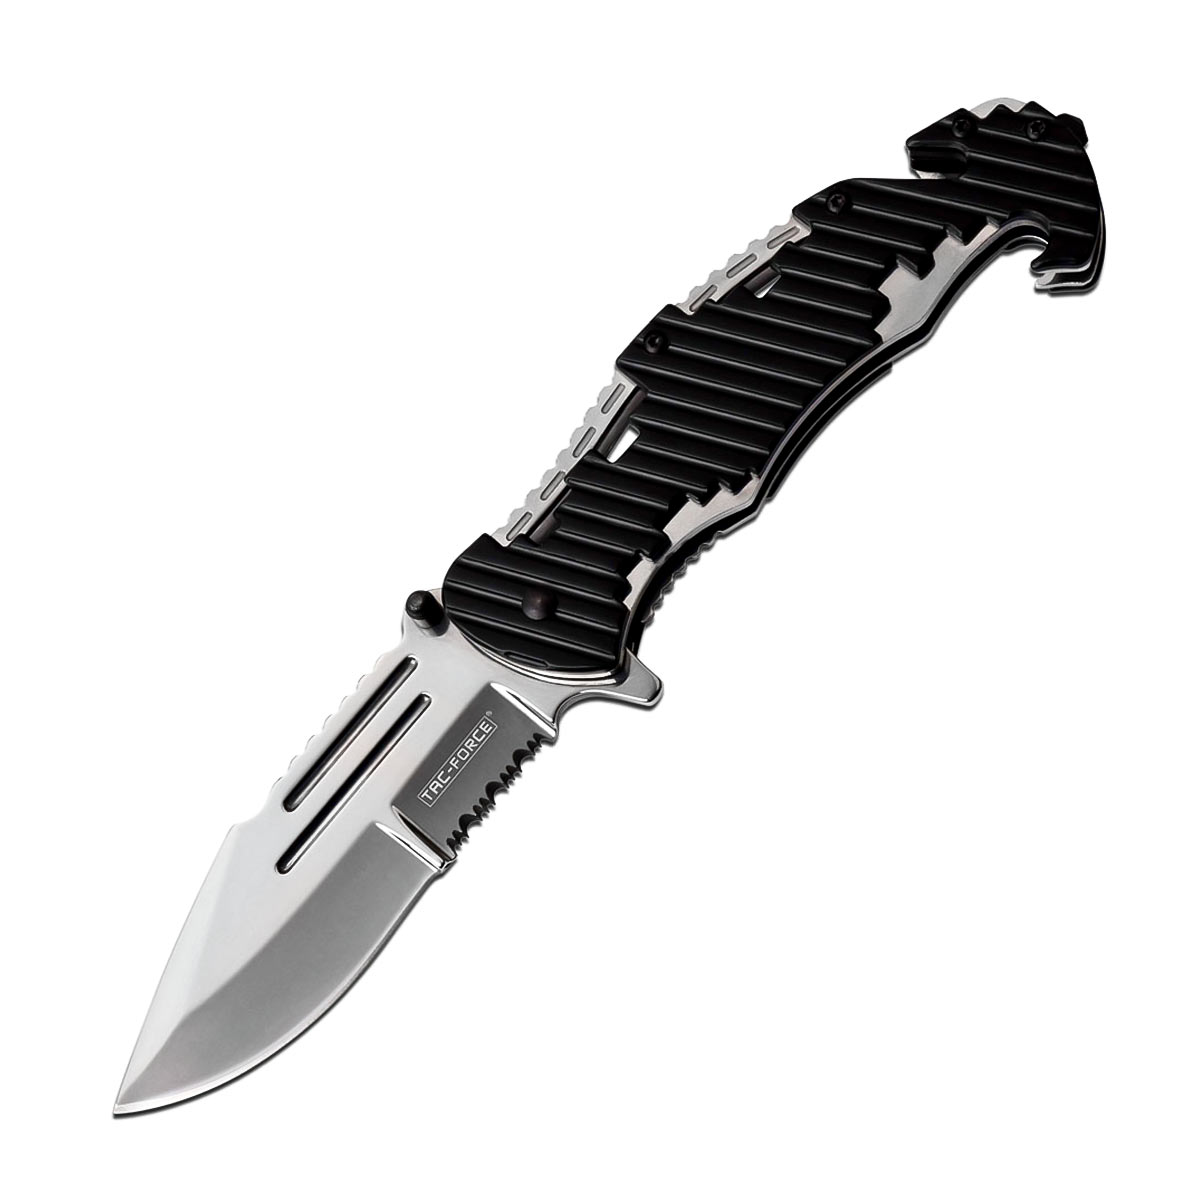 Canivete de Resgate Tac Force Master Cutlery com Abertura Assistida TF-932ST